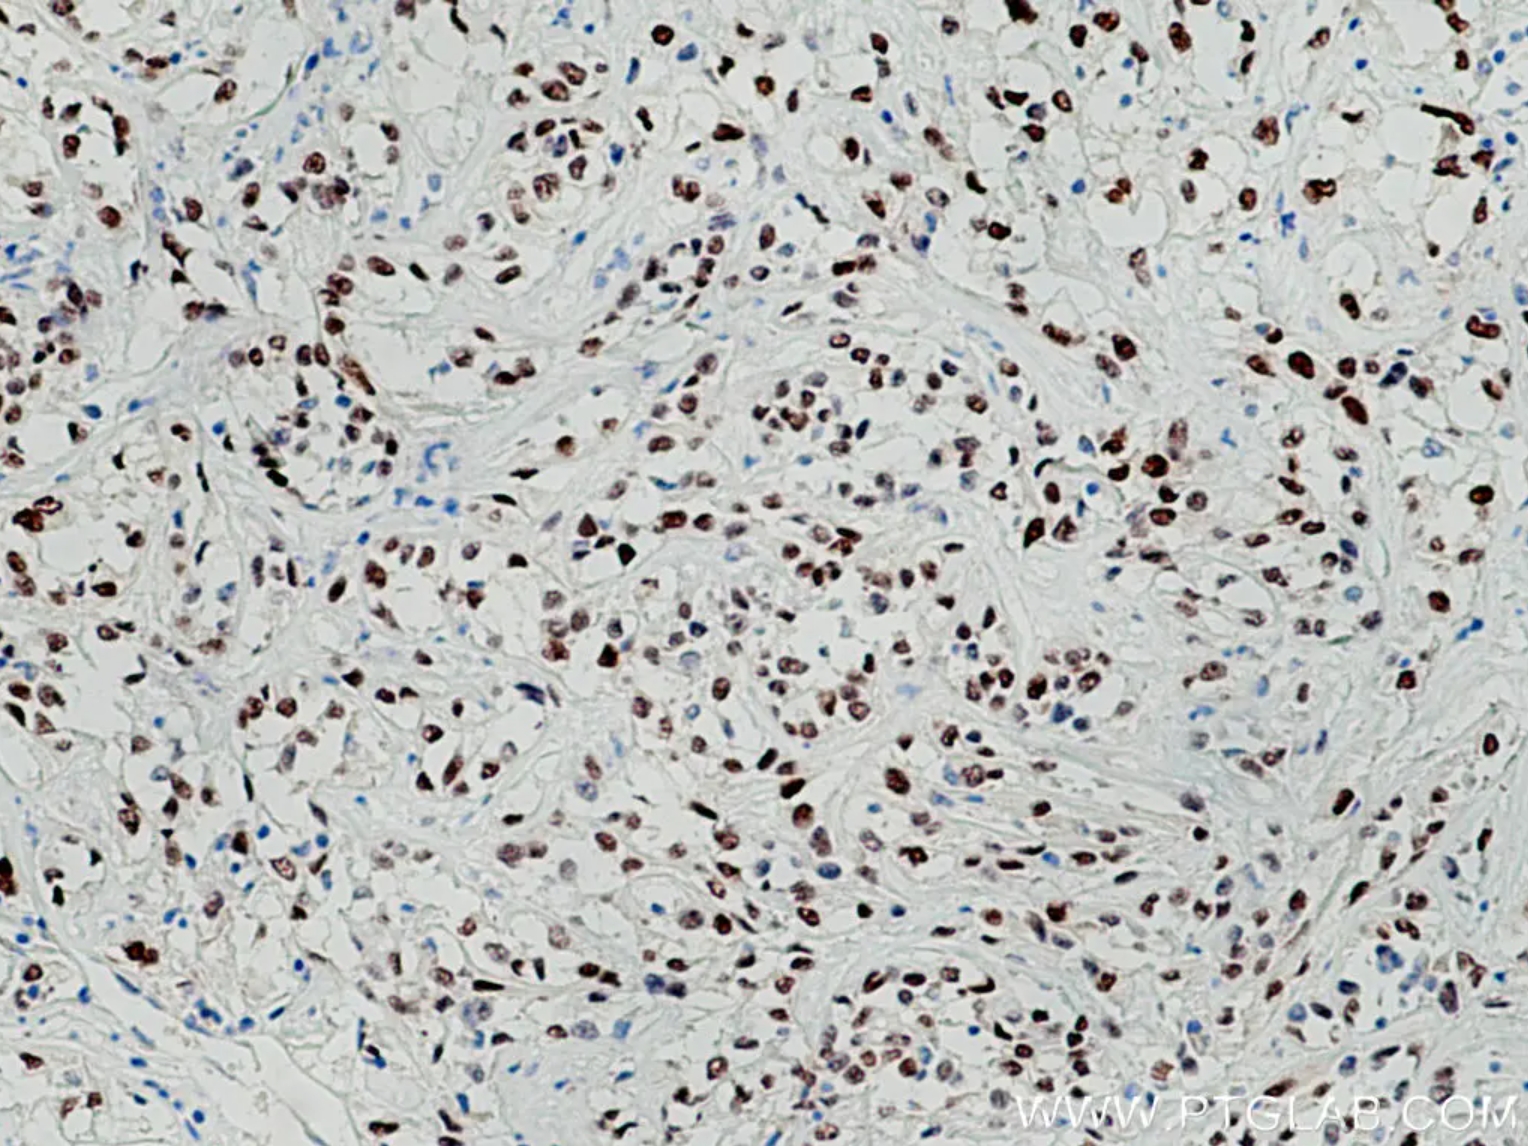 PAX8抗体を使用したパラフィン包埋ヒト腎細胞癌組織スライドの免疫組織化学染色。